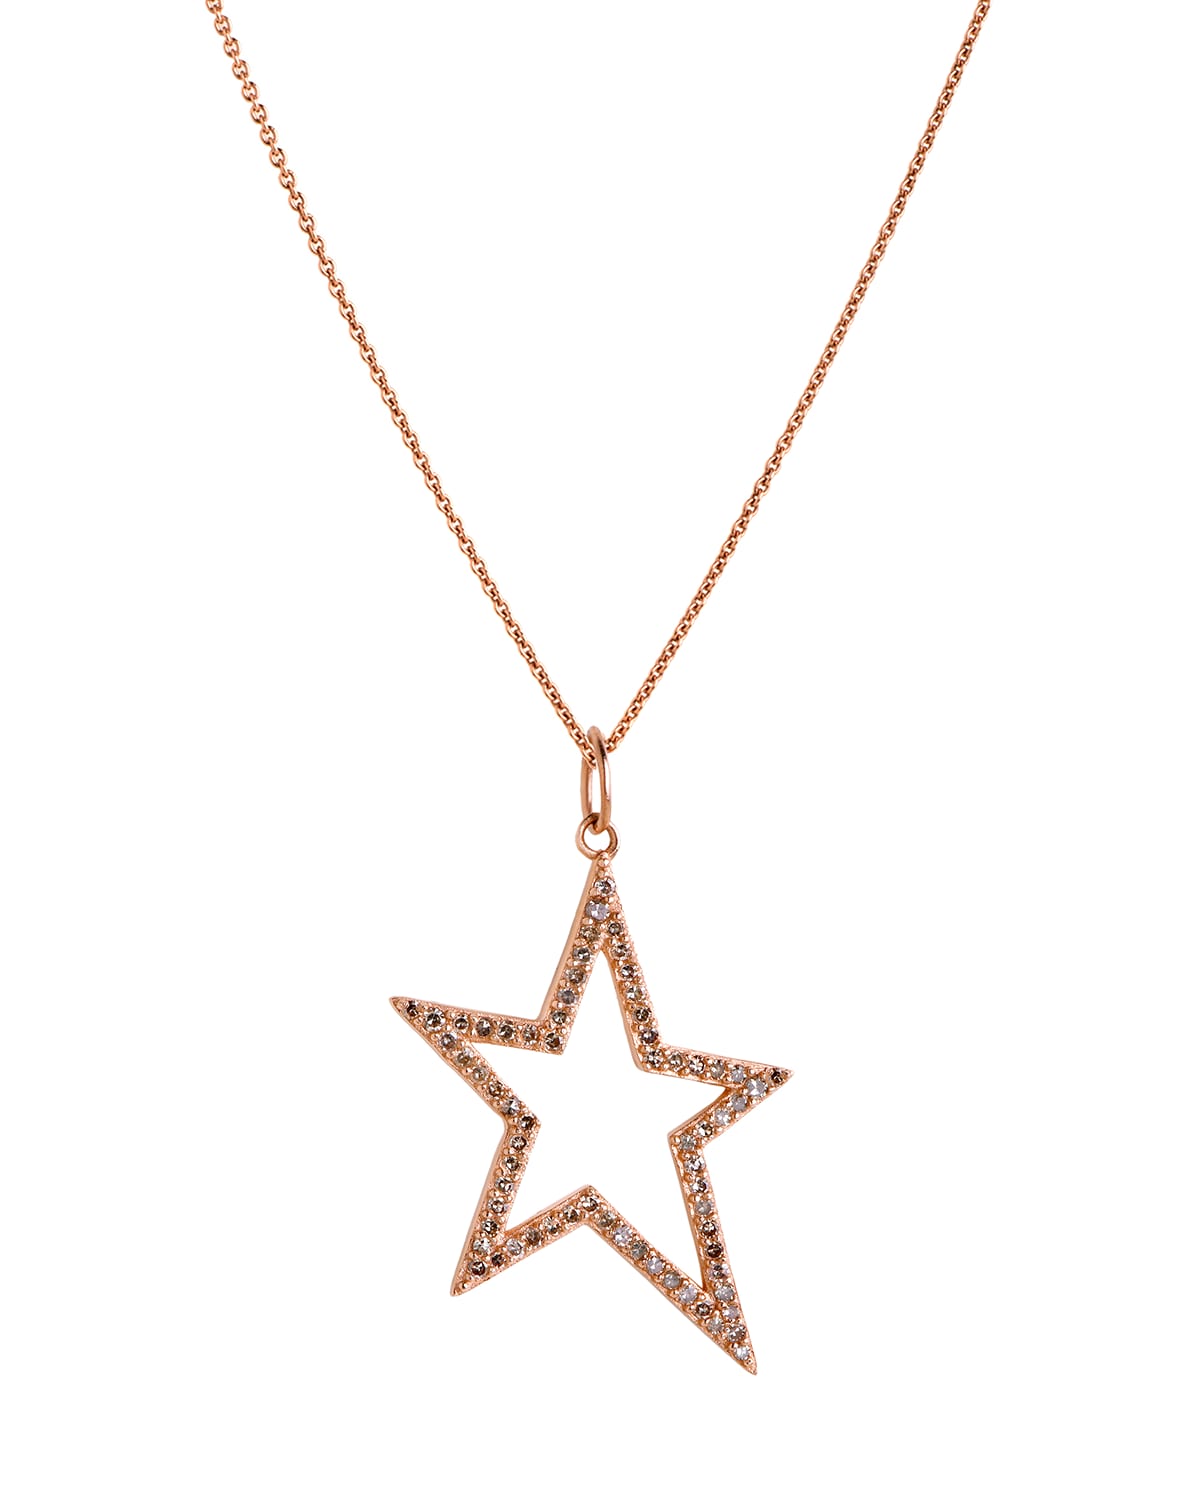 Bridget King Jewelry 14k Hollow Diamond Star Necklace